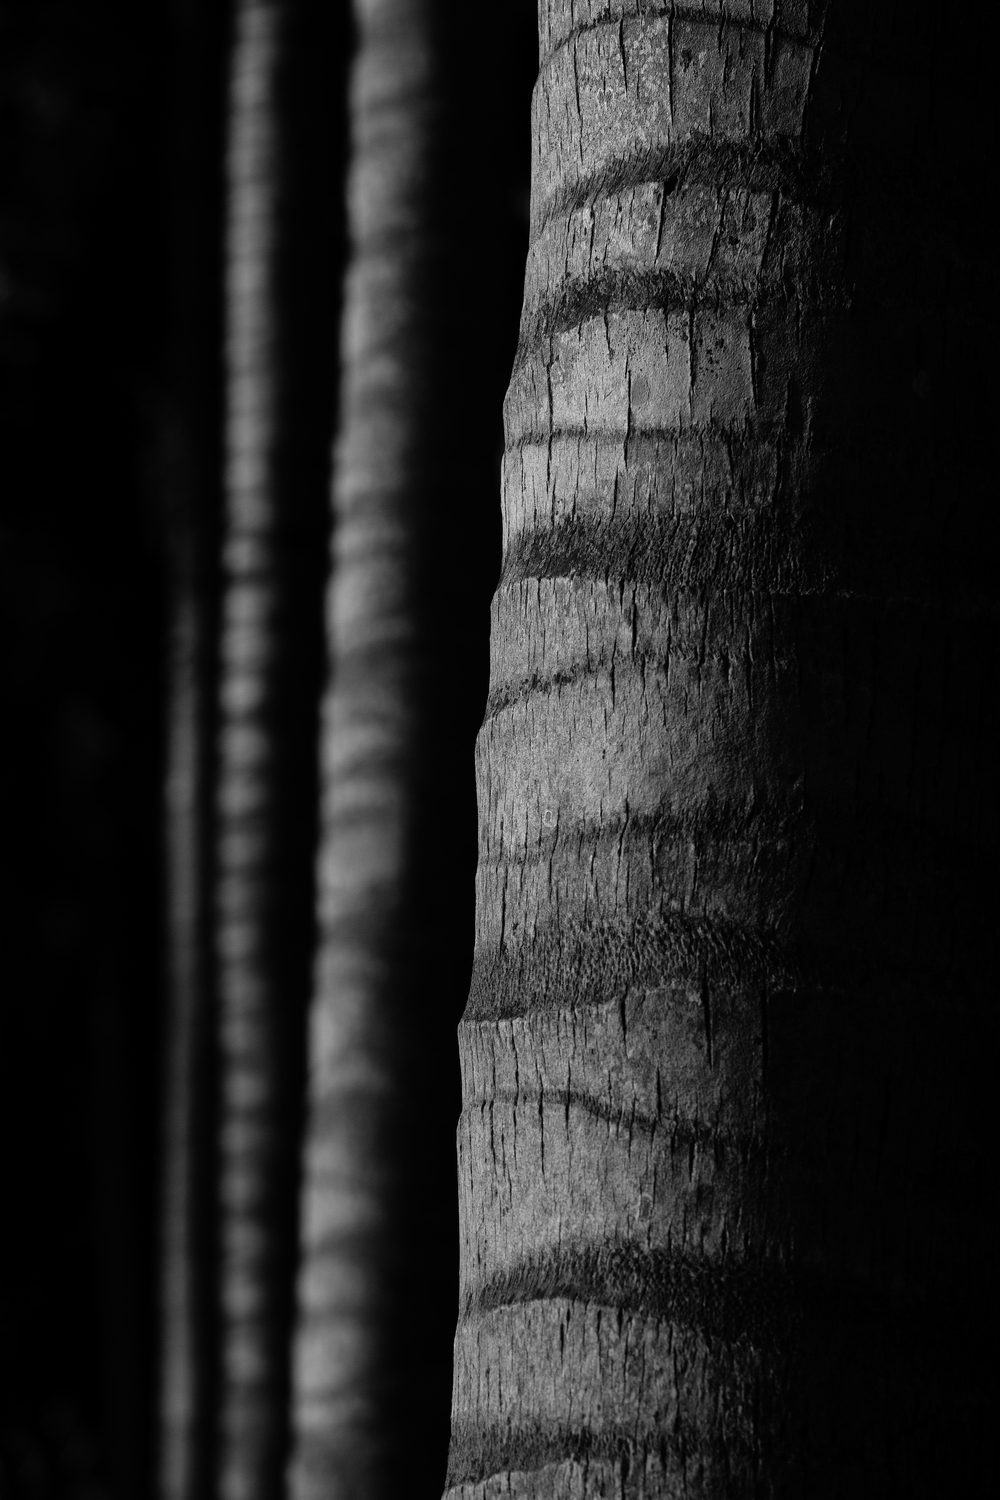 Trunks of Palm Trees_resize.jpg